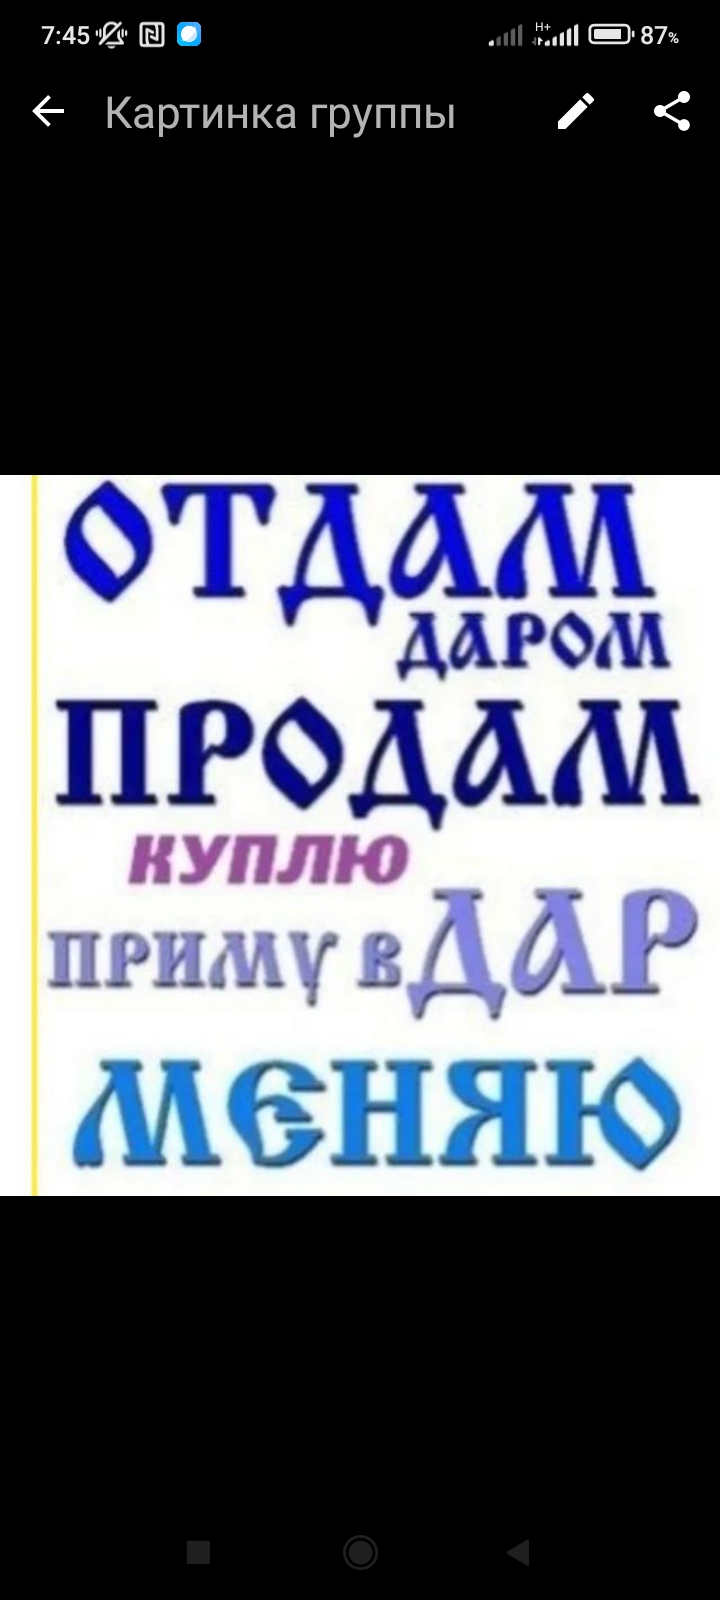 Логотип группы Астрахань продажи